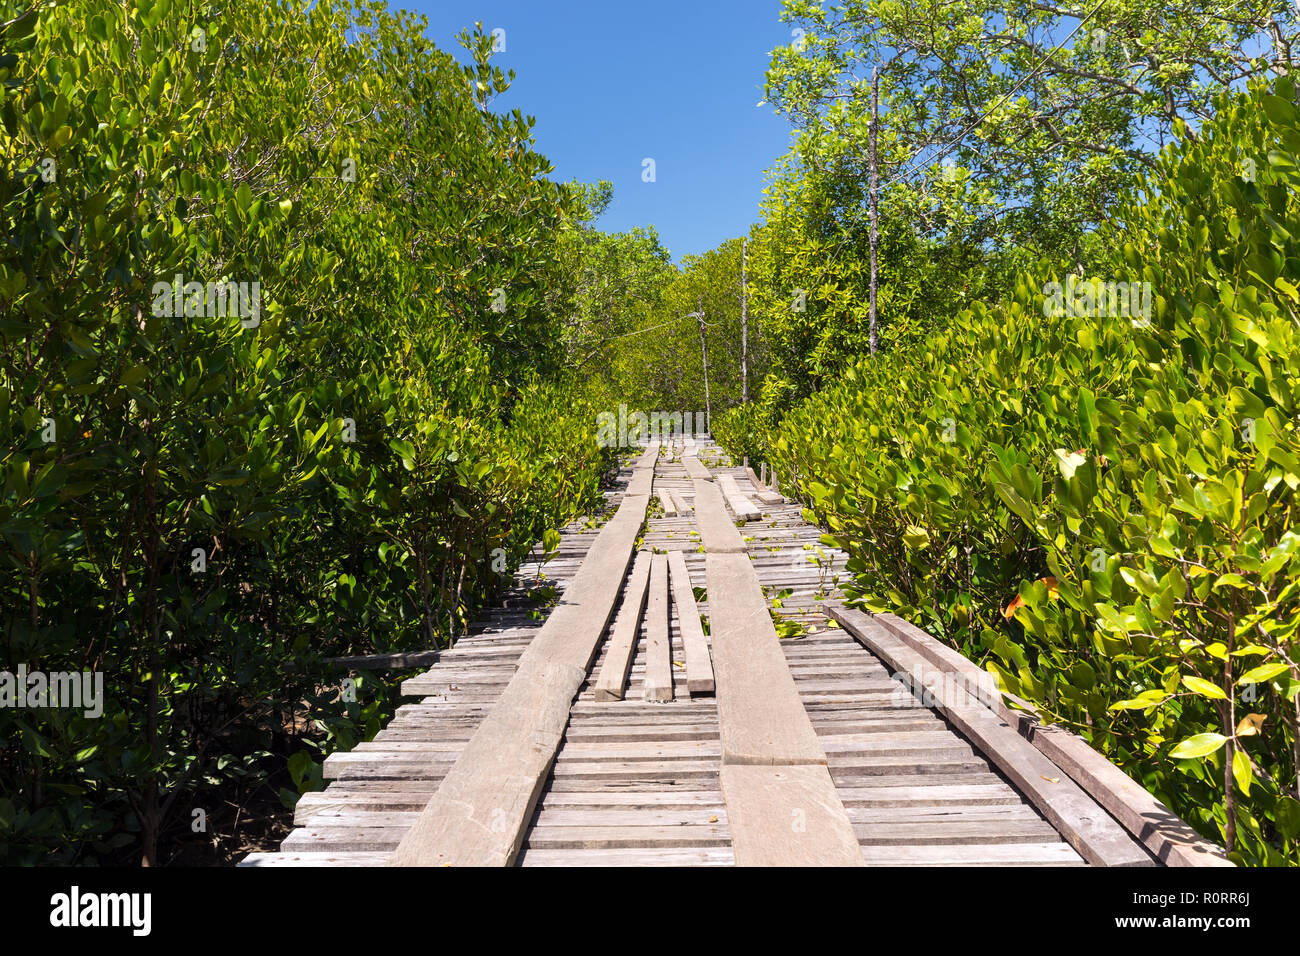 Mangrove tree area in the Ko Lanta island, Thailand Stock Photo